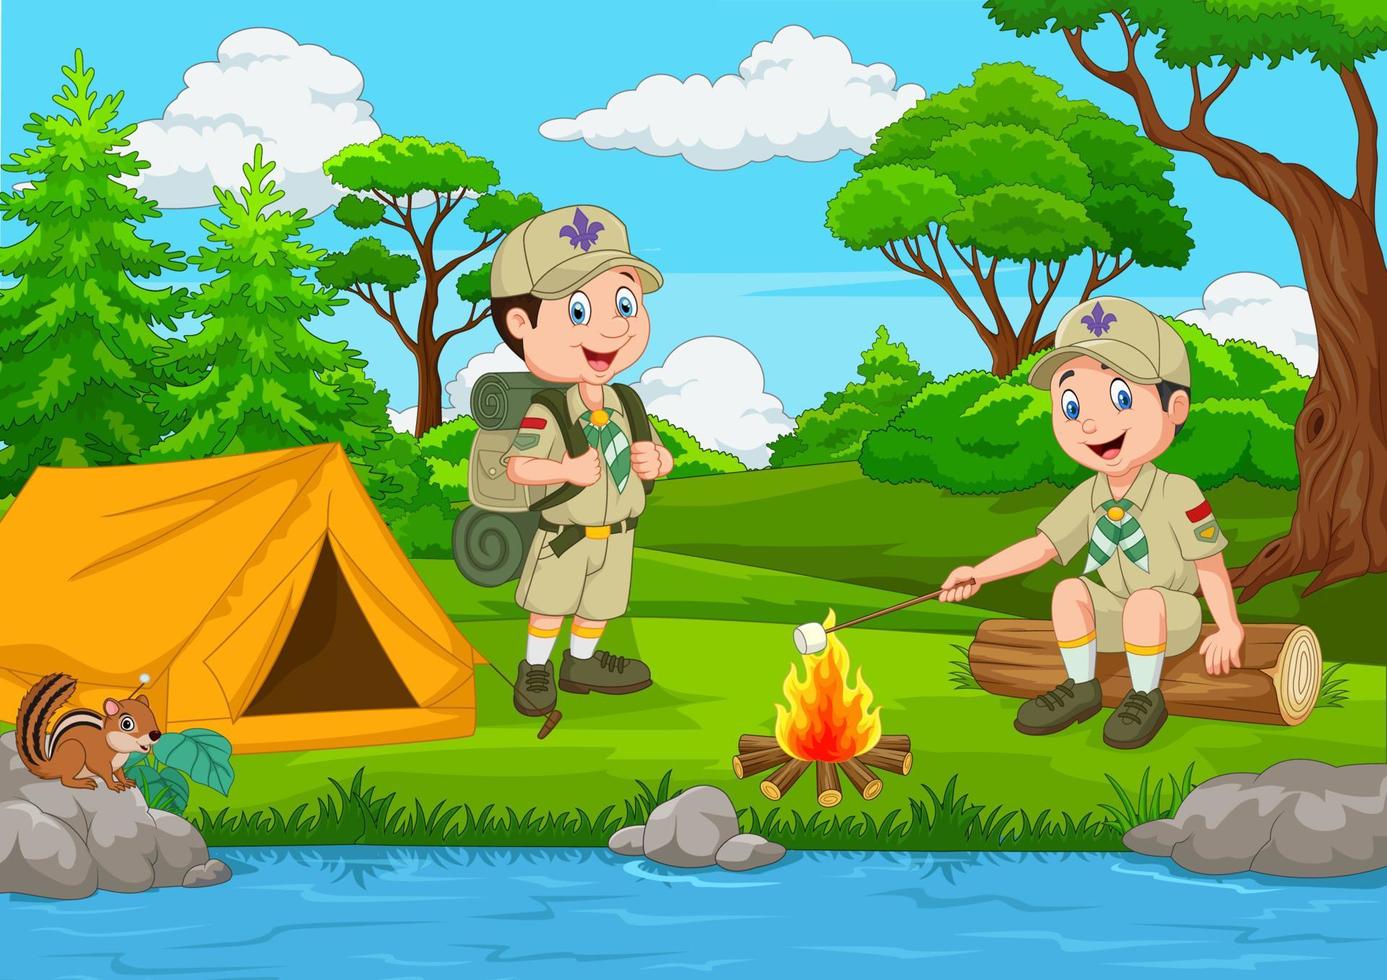 Cartoon Scout mit Zelt und Lagerfeuer vektor